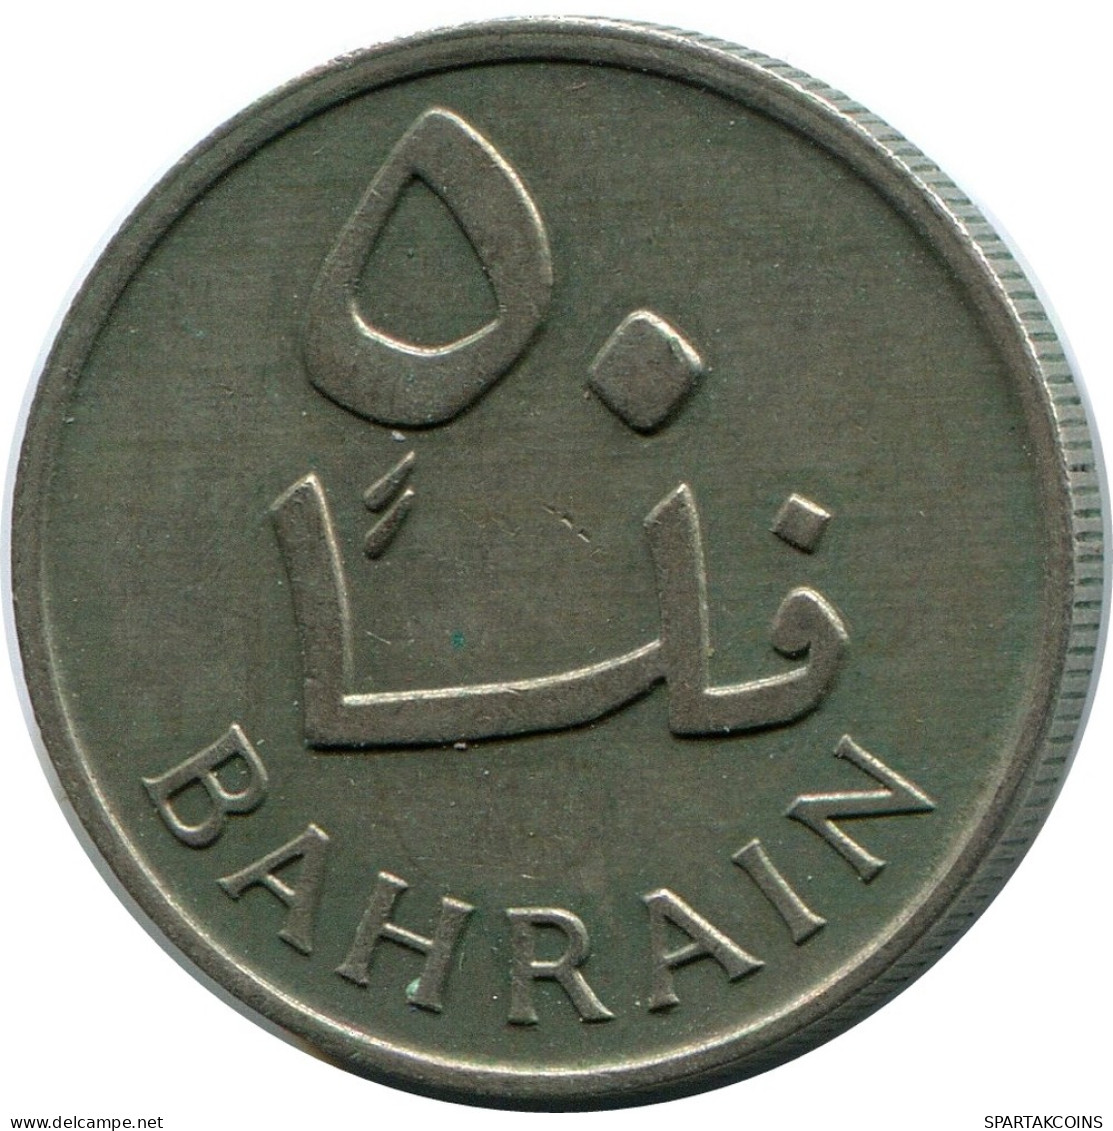 50 FILS 1965 BAHRAIN Islamic Coin #AK181.U - Bahrain